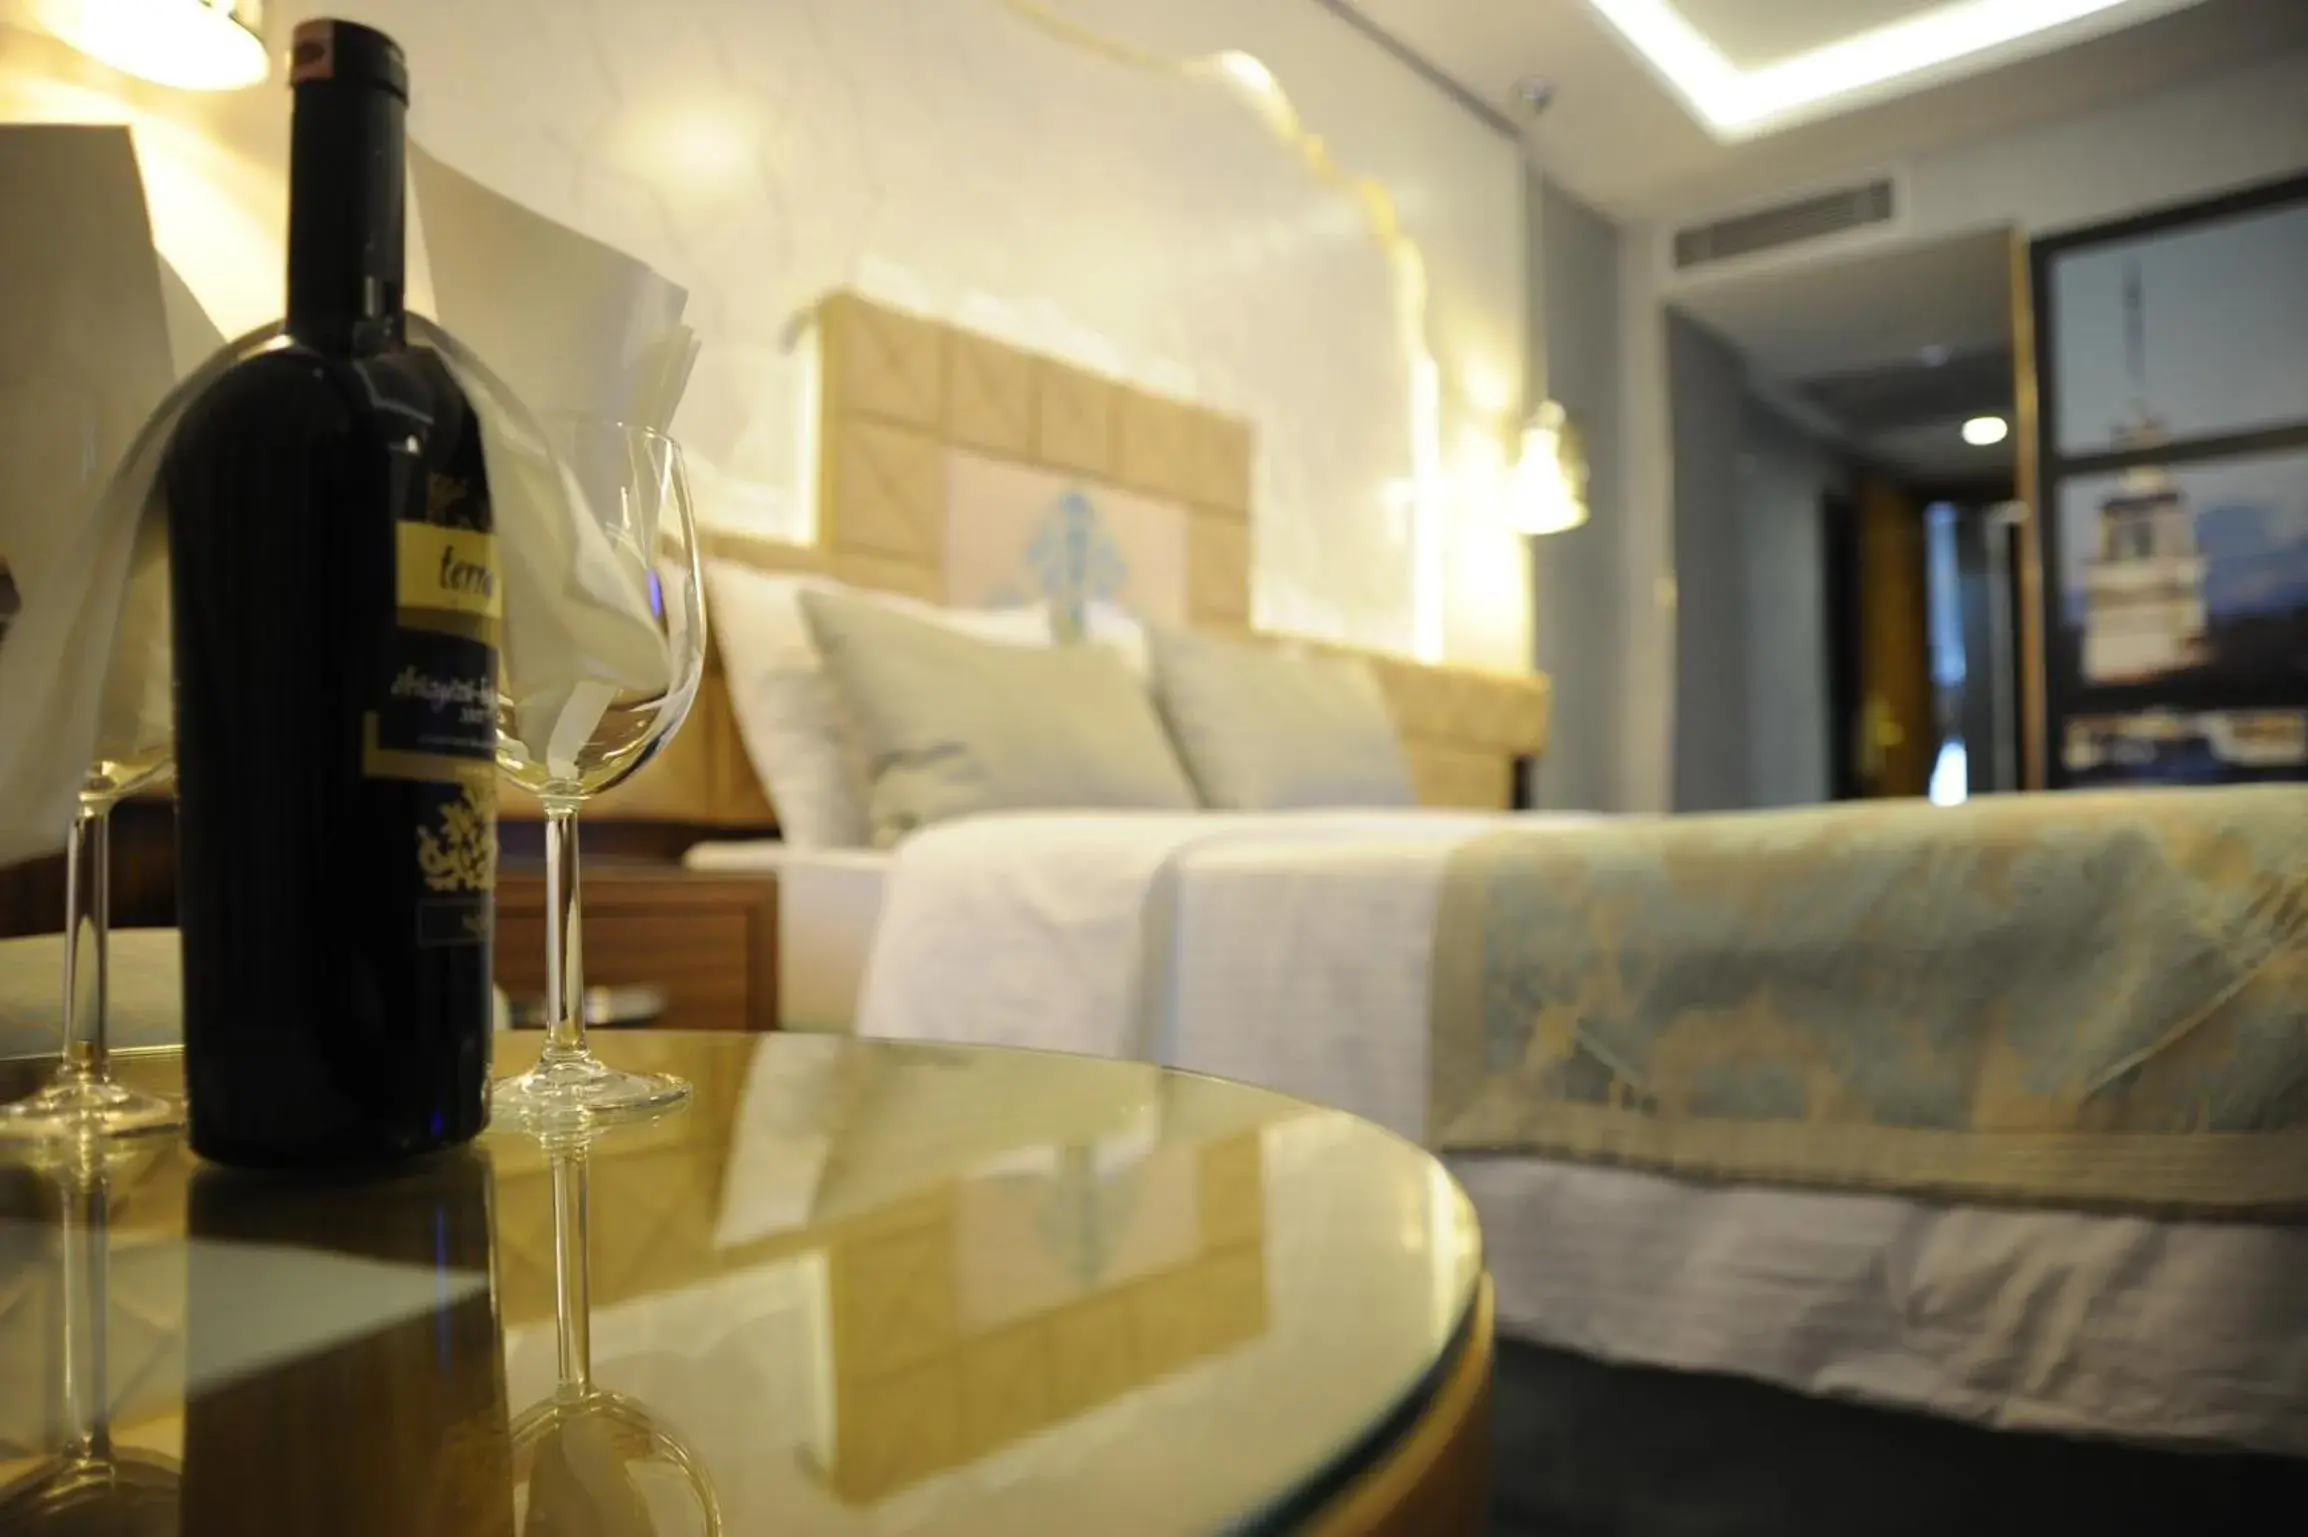 Honeymoon Suite Packages in Taksim Star Hotel